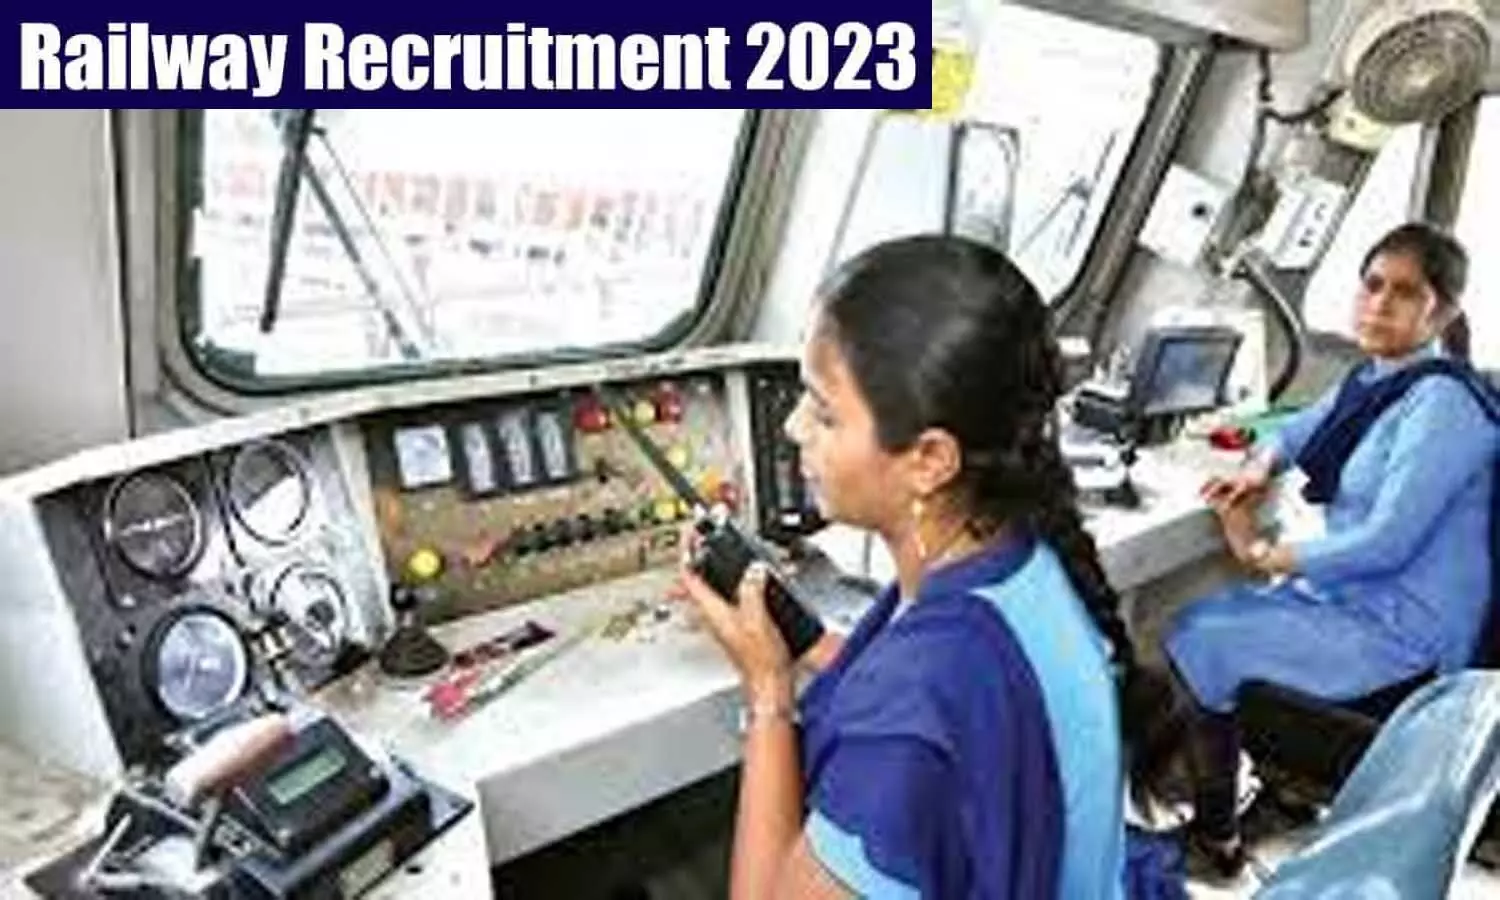 Railway Recruitment 2023: रेलवे में 1 हजार से अधिक विभिन्न पदों पर निकली वैकेंसी, यह होनी चाहिए क्वालिफिकेशन व एज लिमिट